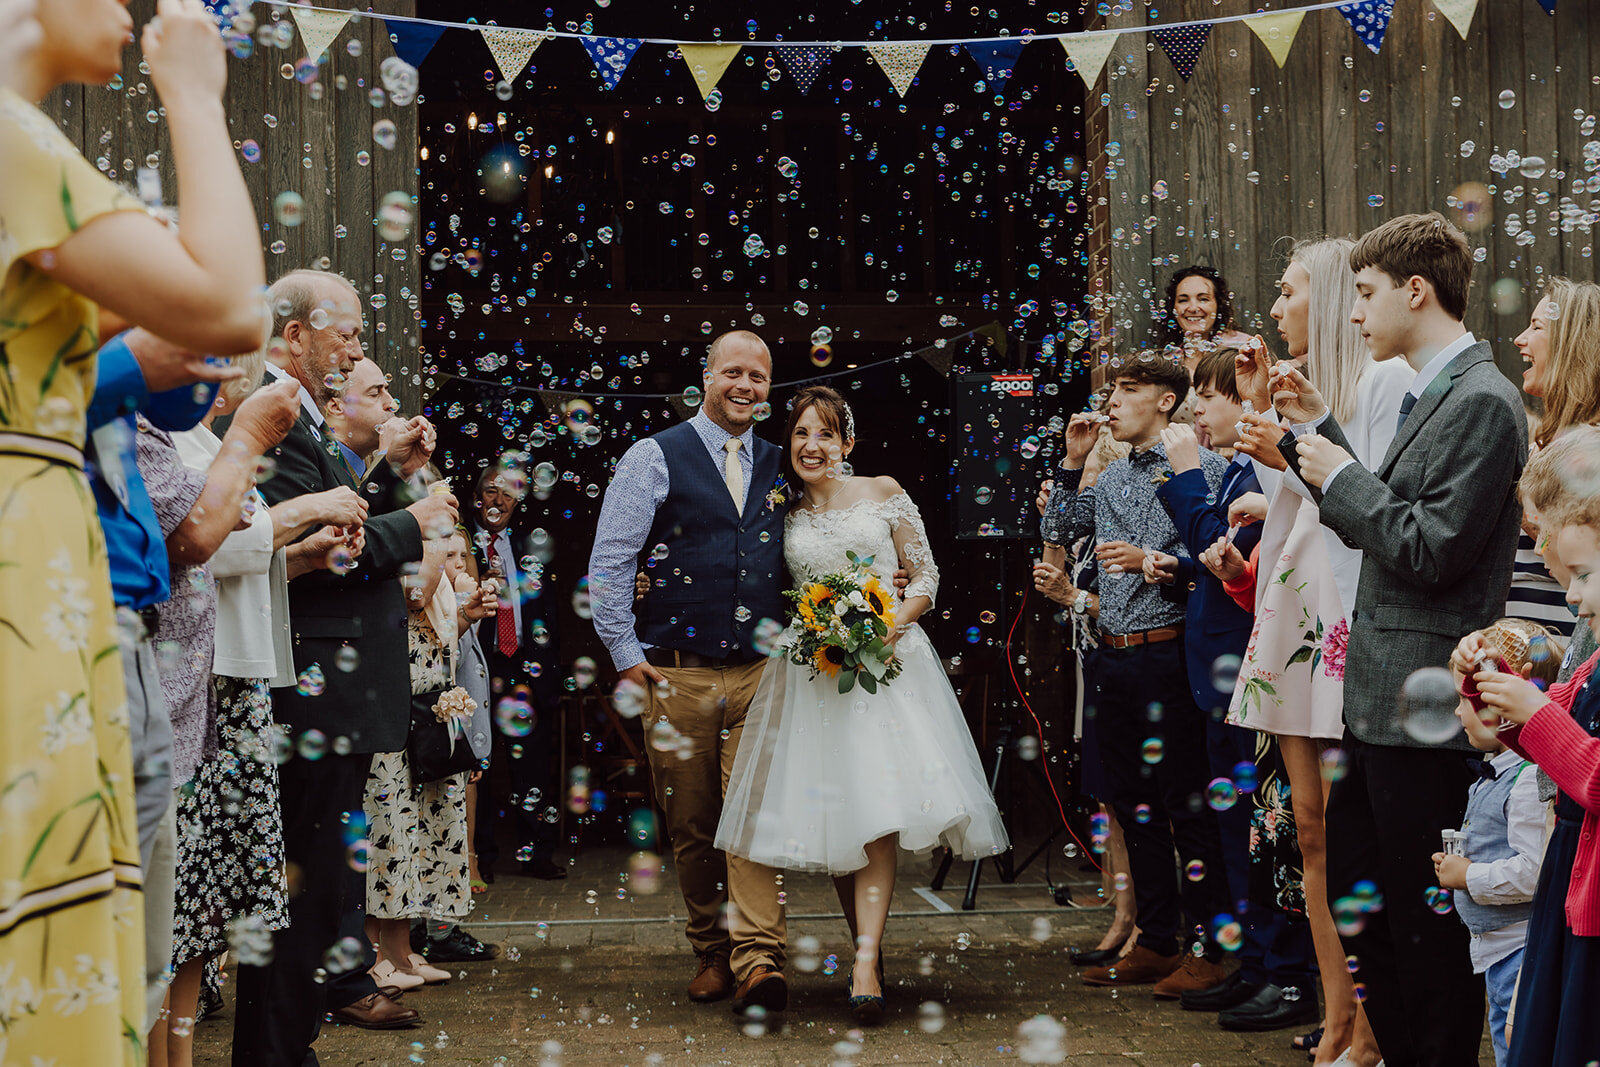 Bubble wedding confetti photo